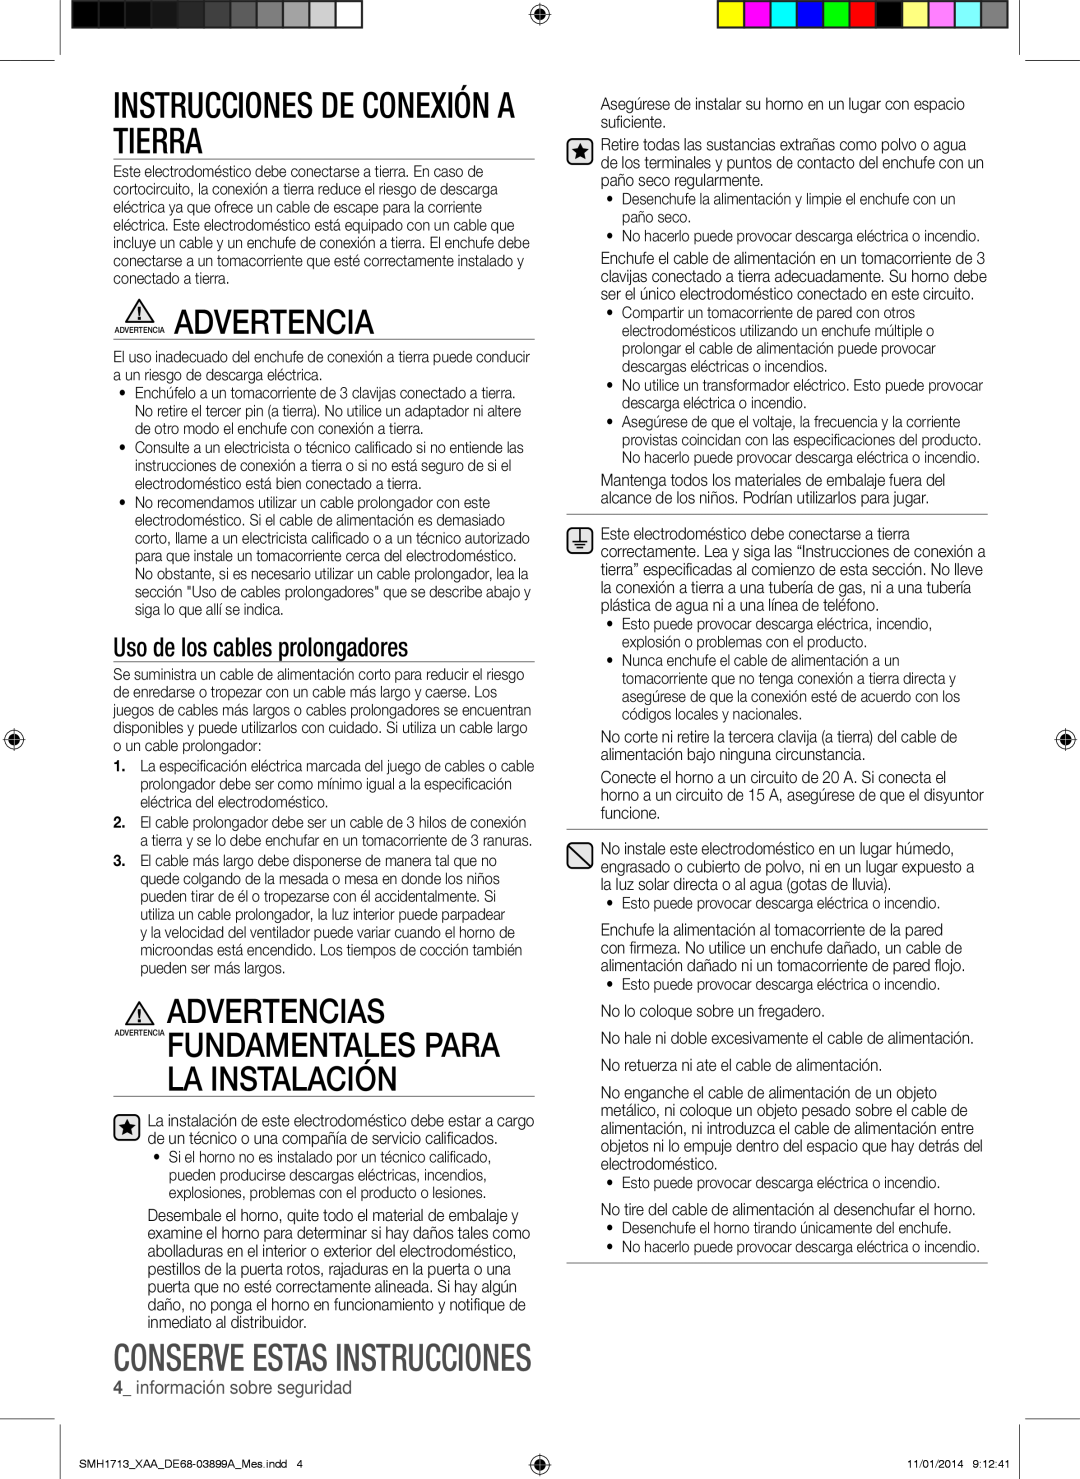 Samsung SMH1713 user manual Instrucciones De Conexión A Tierra, Advertencias, Advertencia Fundamentales Para La Instalación 